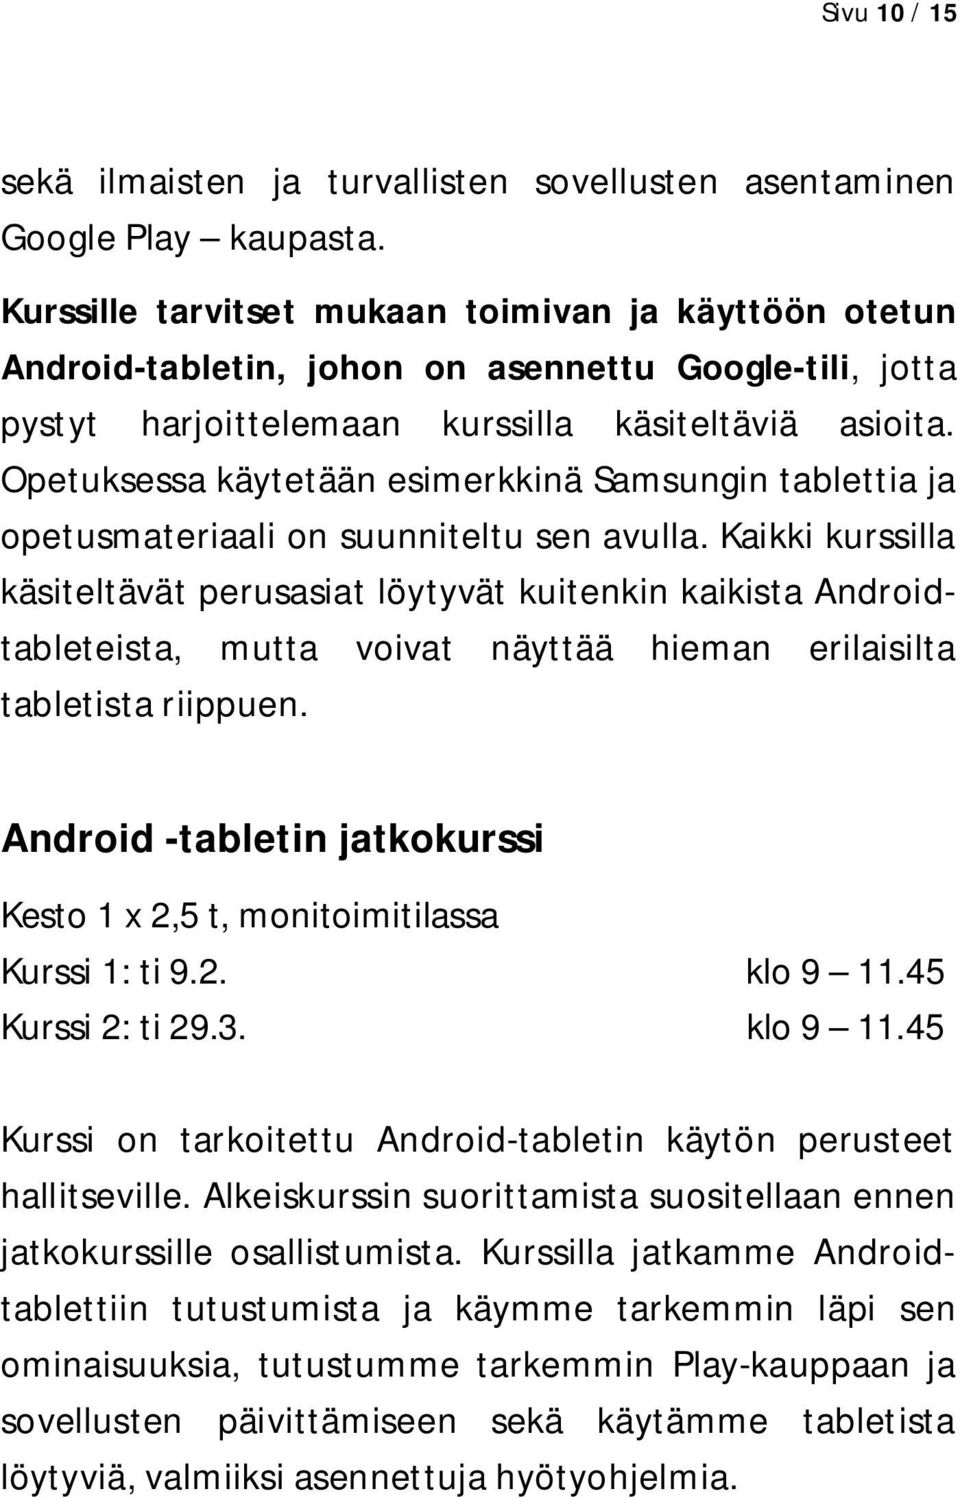 Opetuksessa käytetään esimerkkinä Samsungin tablettia ja opetusmateriaali on suunniteltu sen avulla.